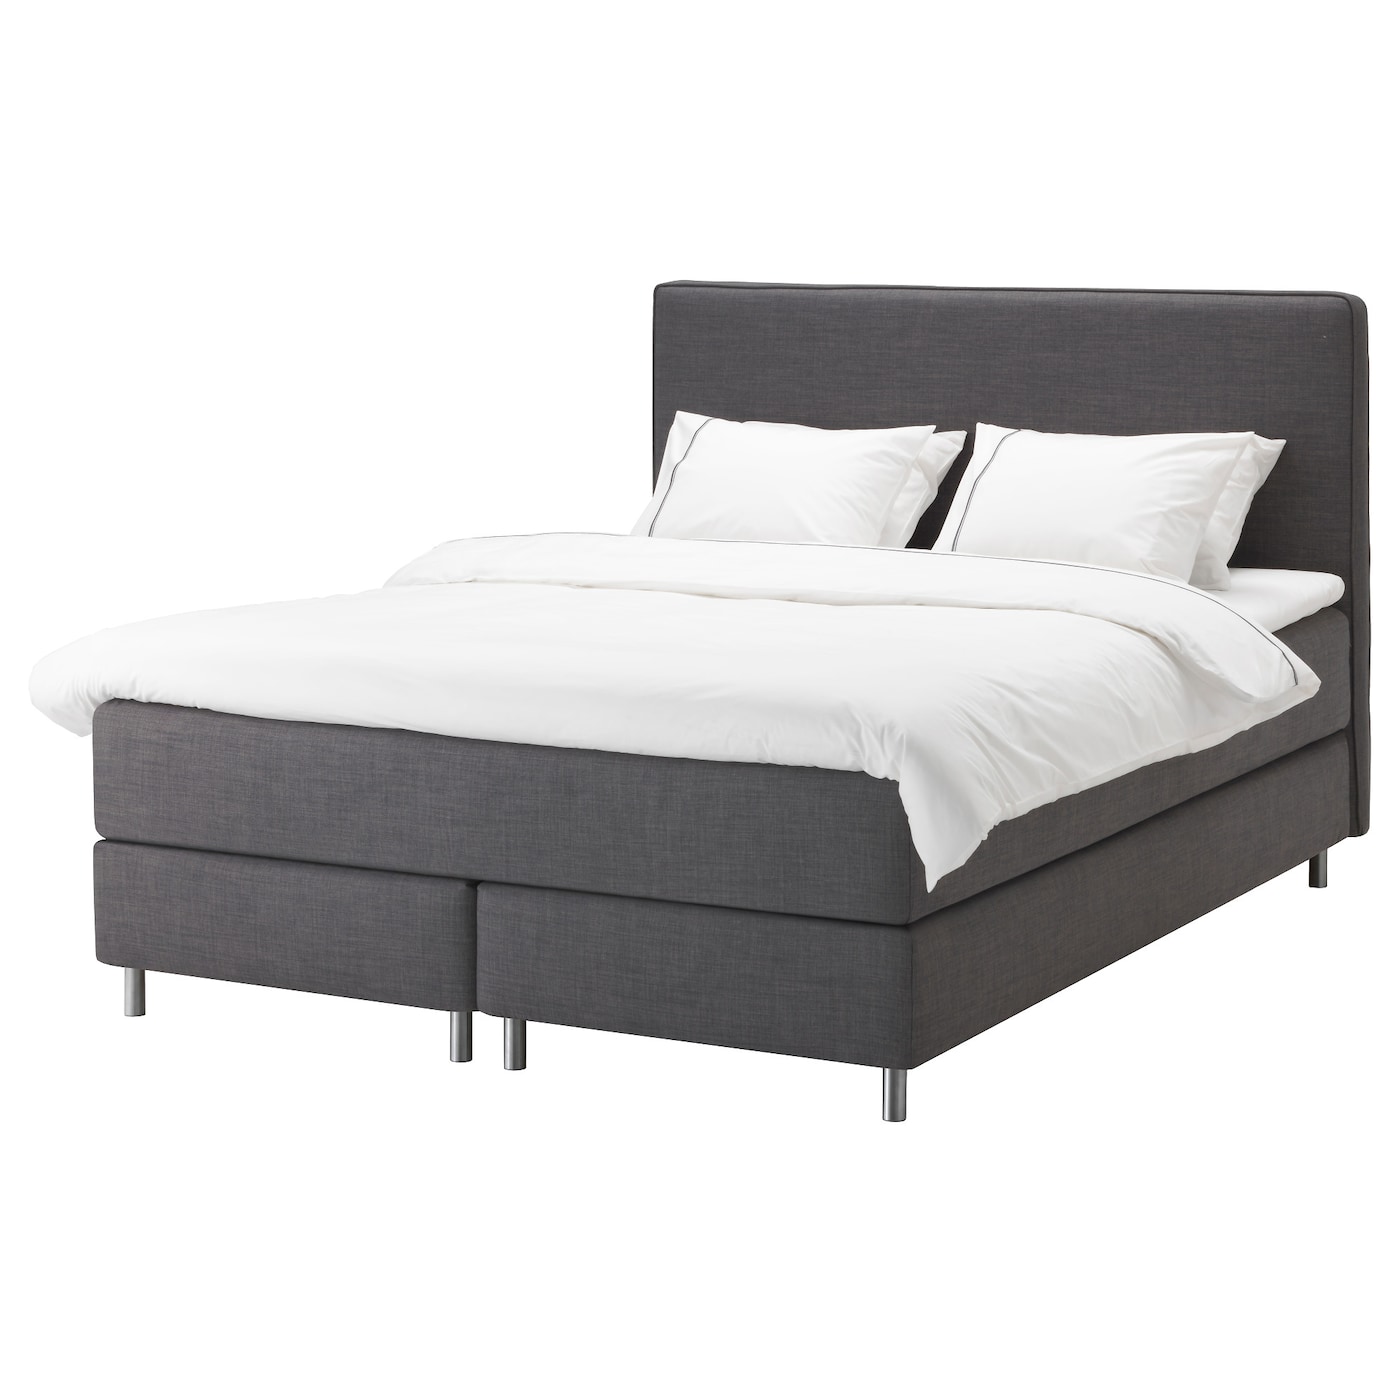 Континентальная кровать - IKEA DUNVIK, 200х180 см, матрас жесткий/средне-жесткий, темно-серый, ДУНВИК ИКЕА